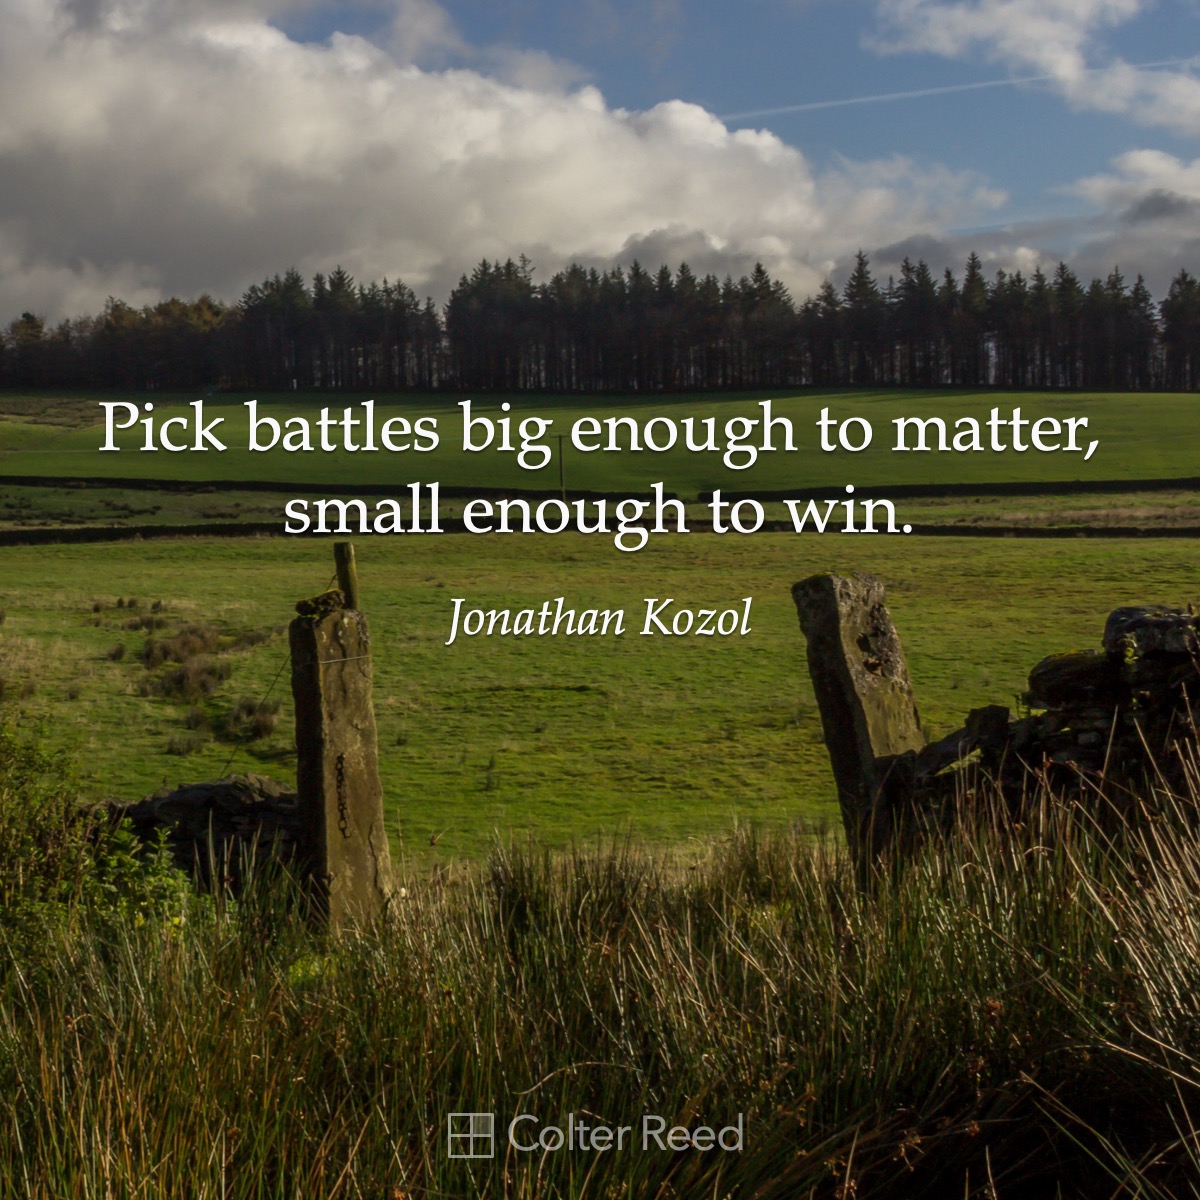 Pick battles big enough to matter, small enough to win. —Jonathan Kozol